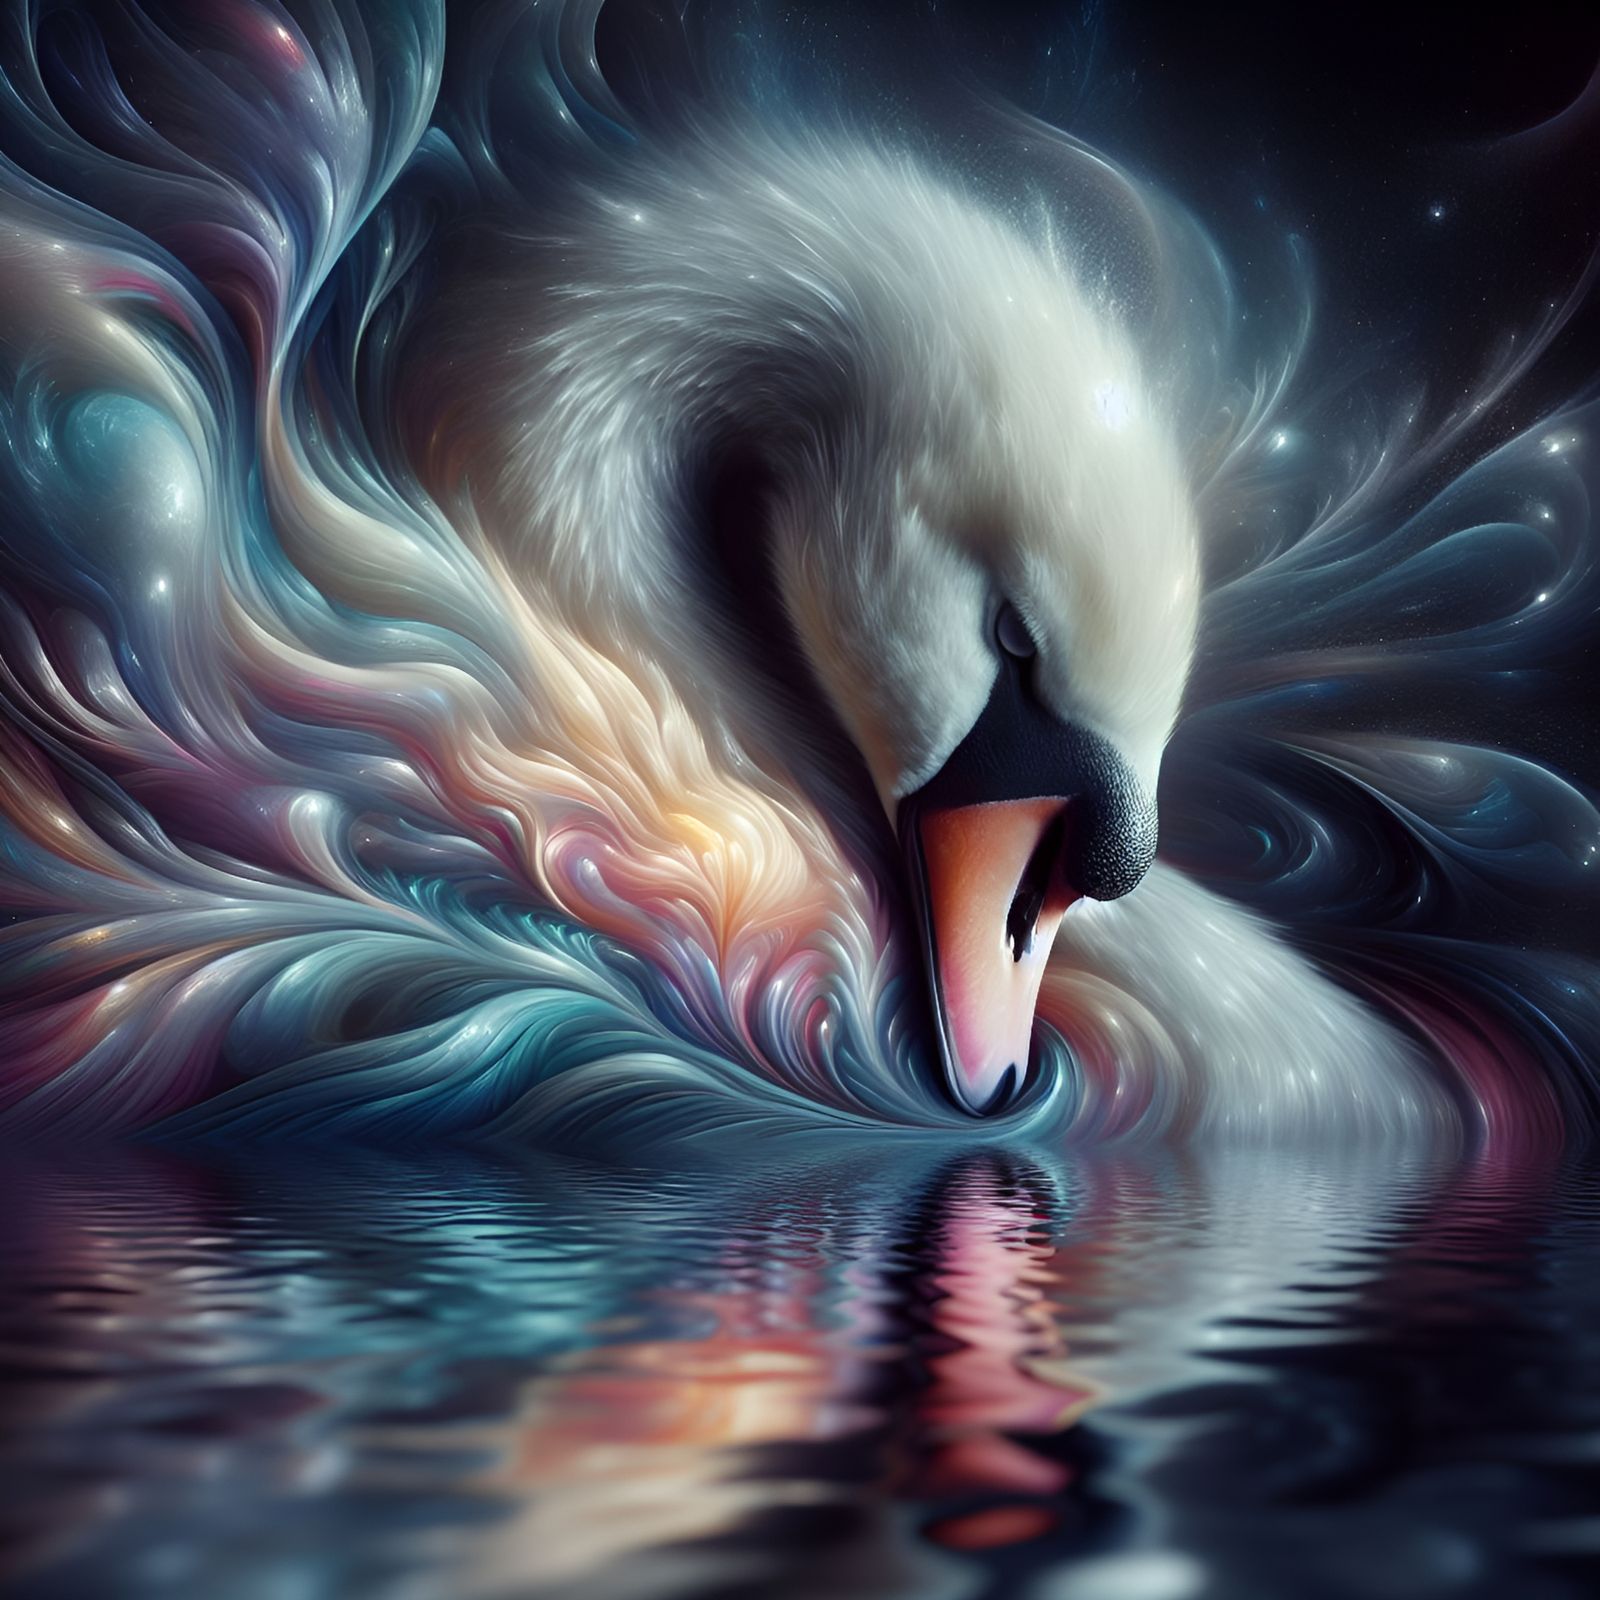 When Swans Dream